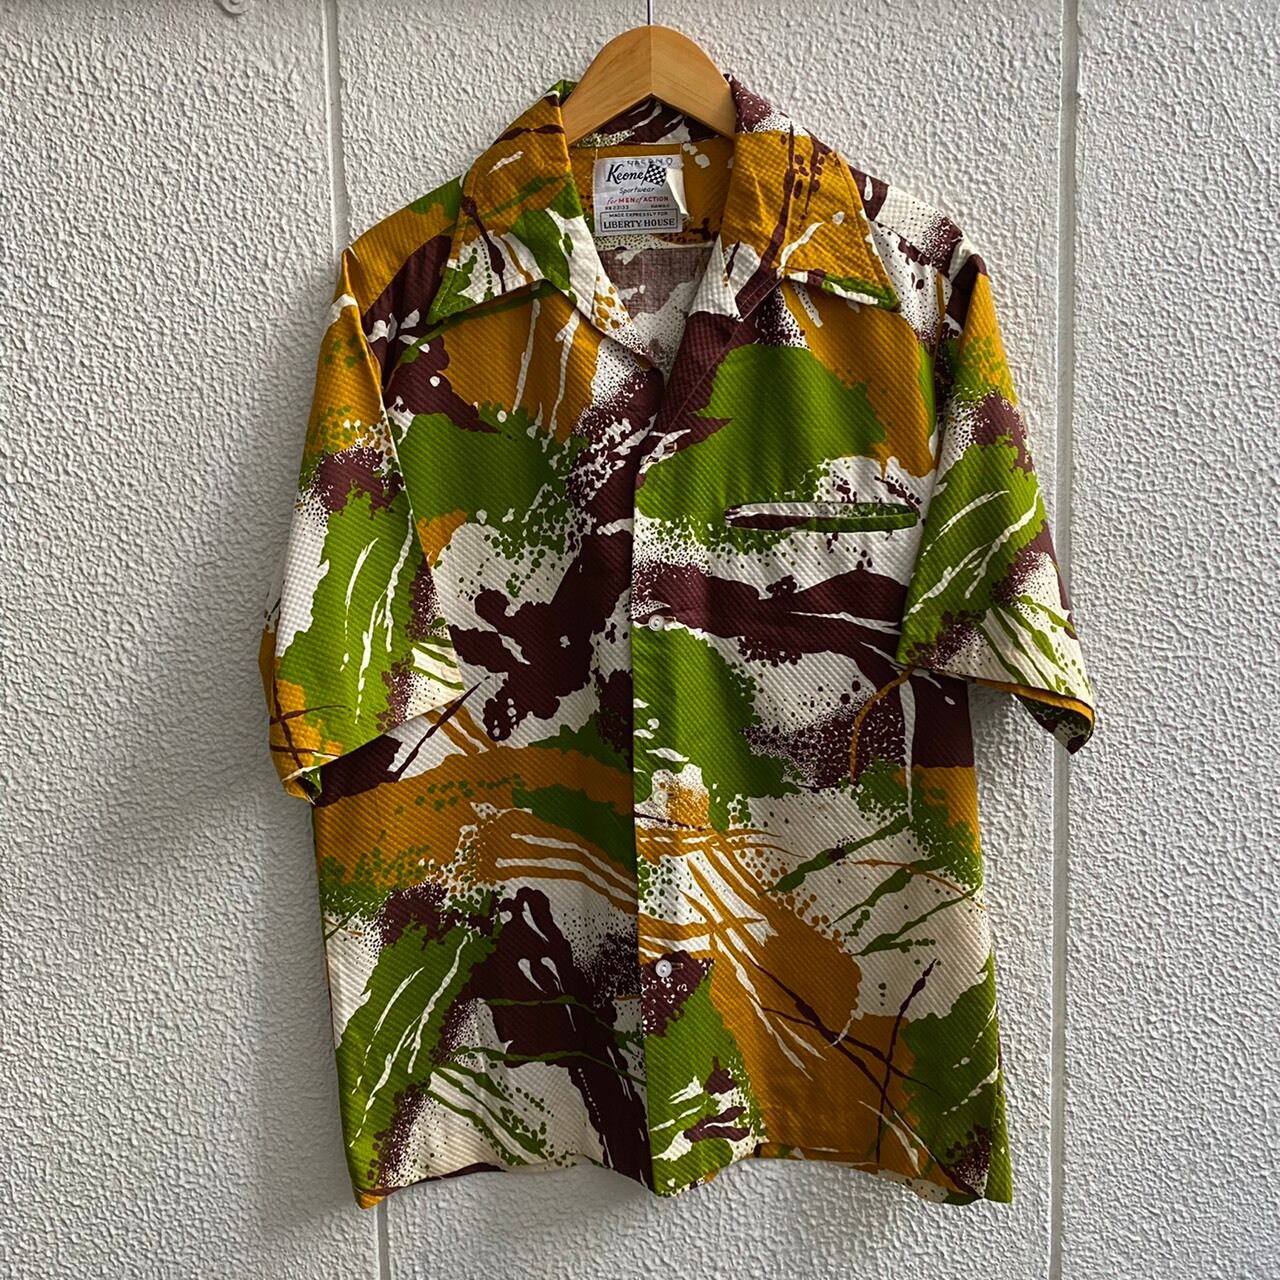 70’s Aliikoa プルオーバー Hawaiian Shirt